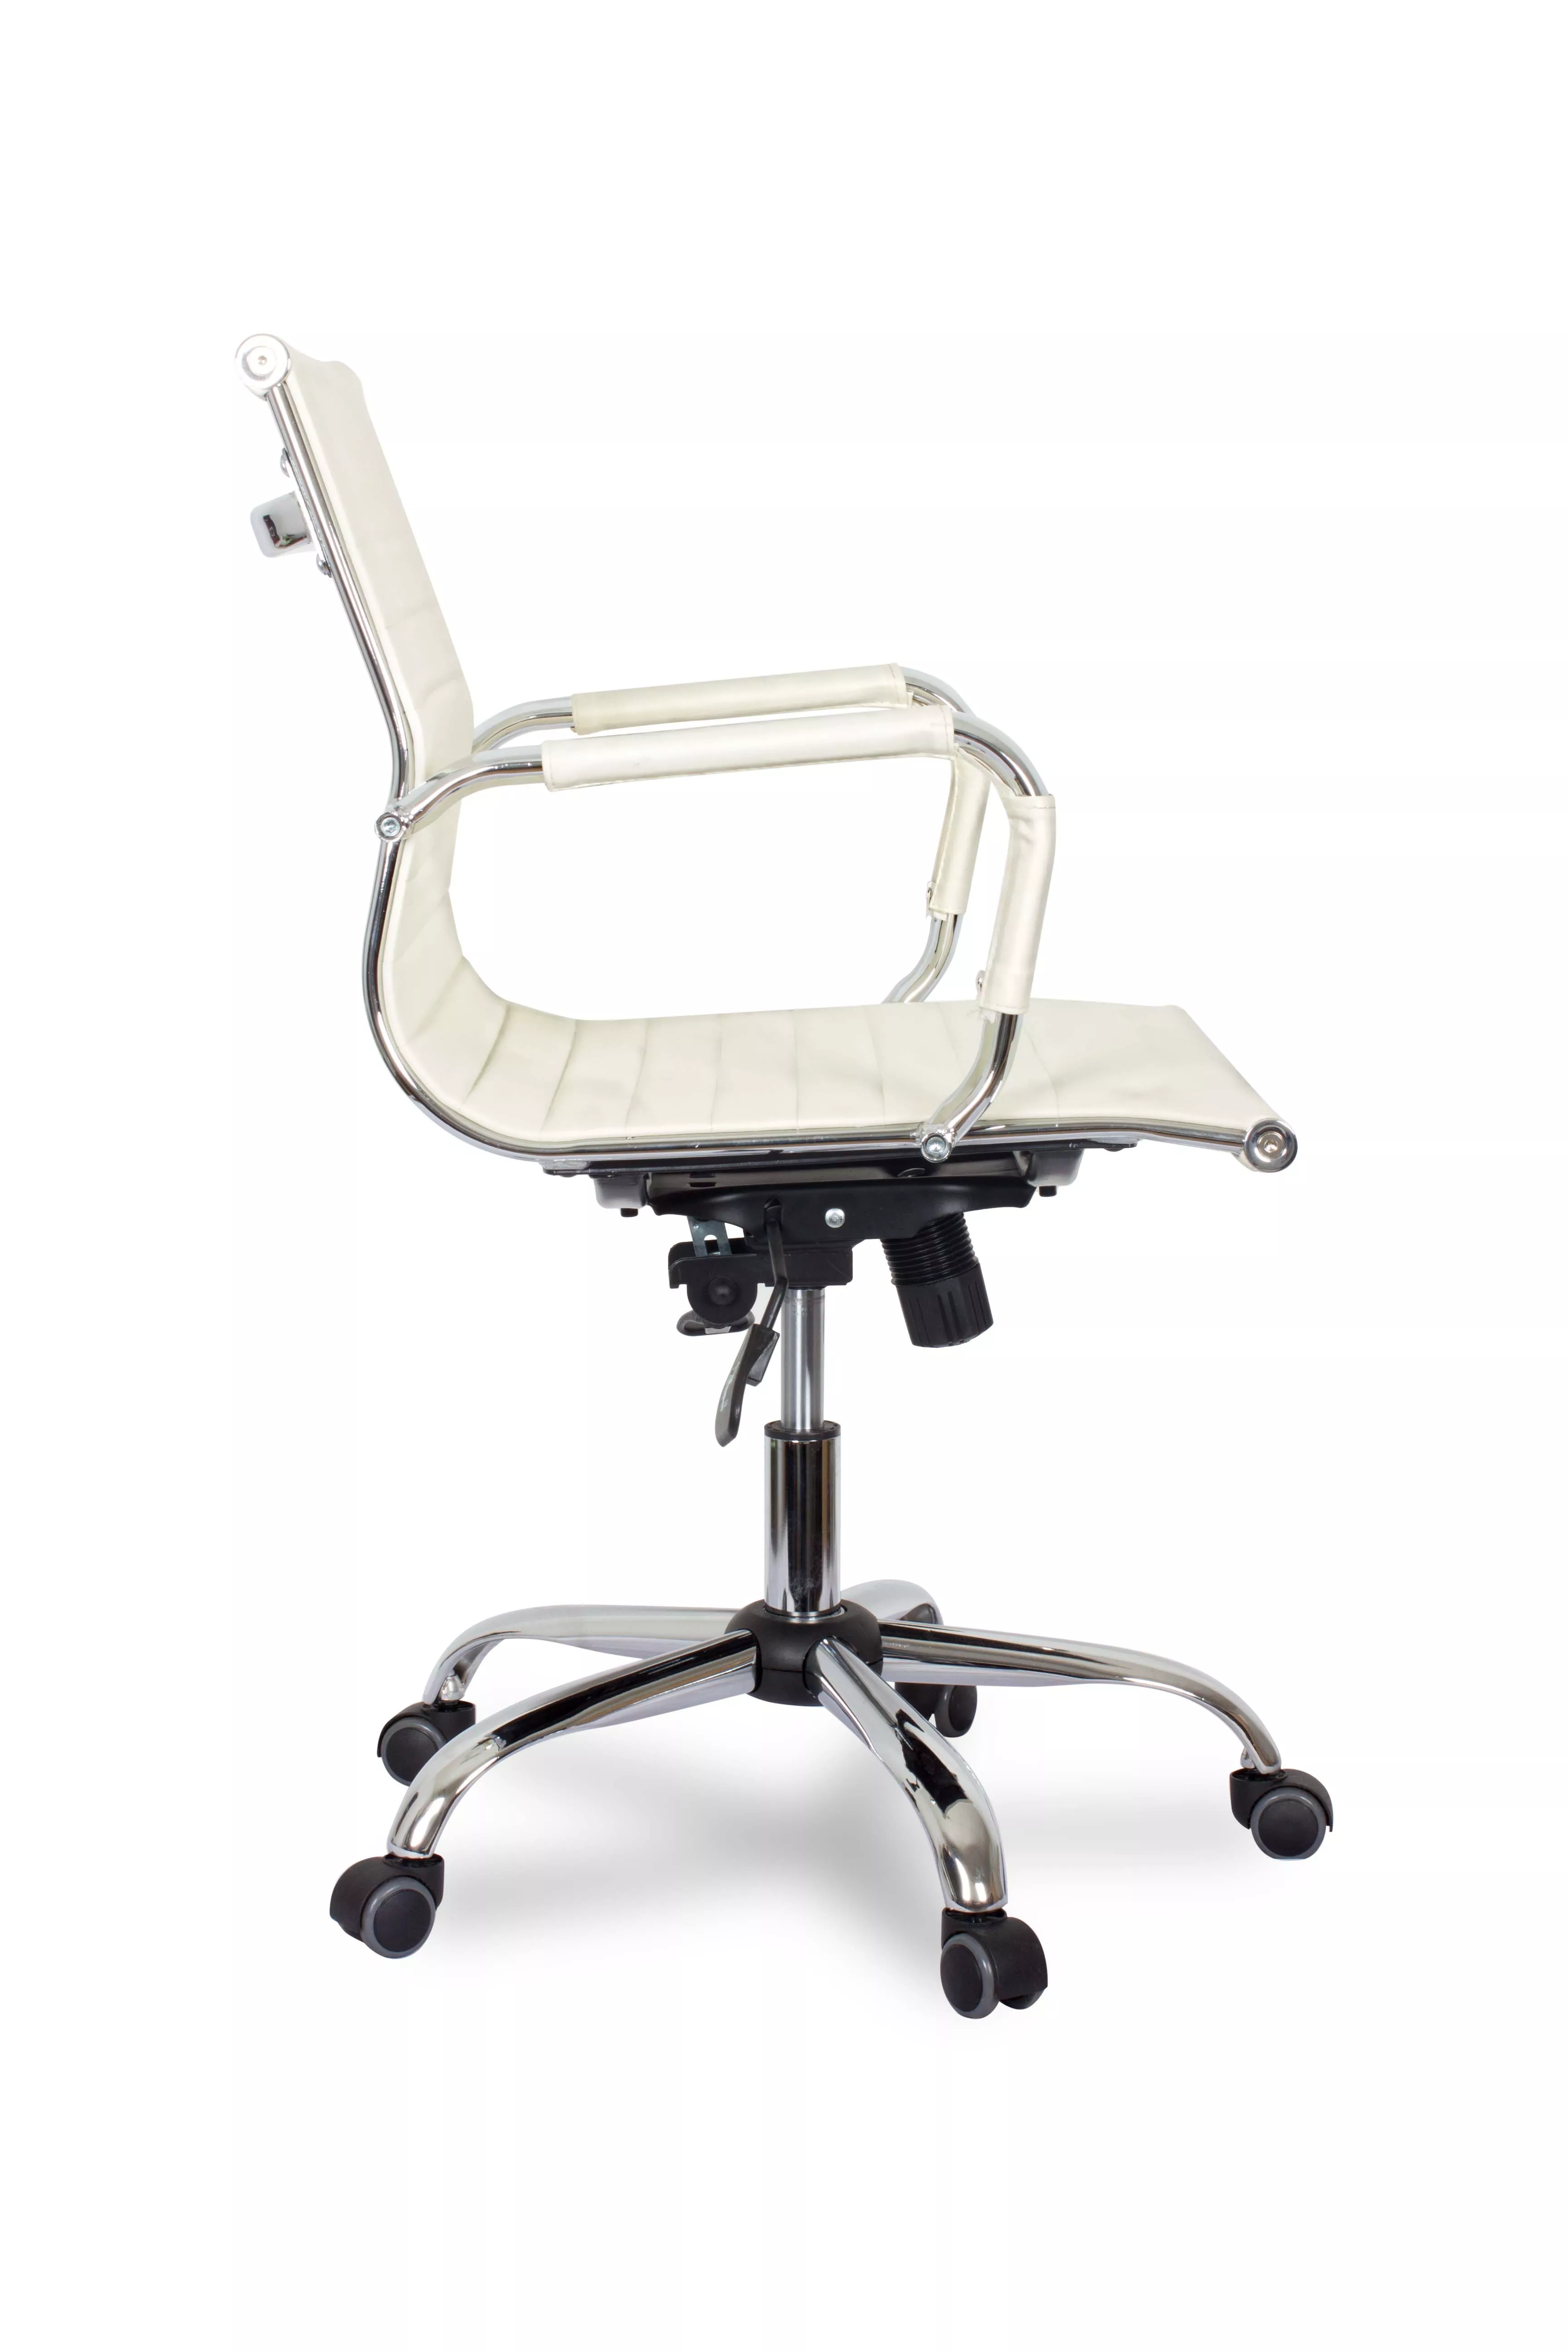 Кресло для руководителя College CLG-620 LXH-B Бежевый